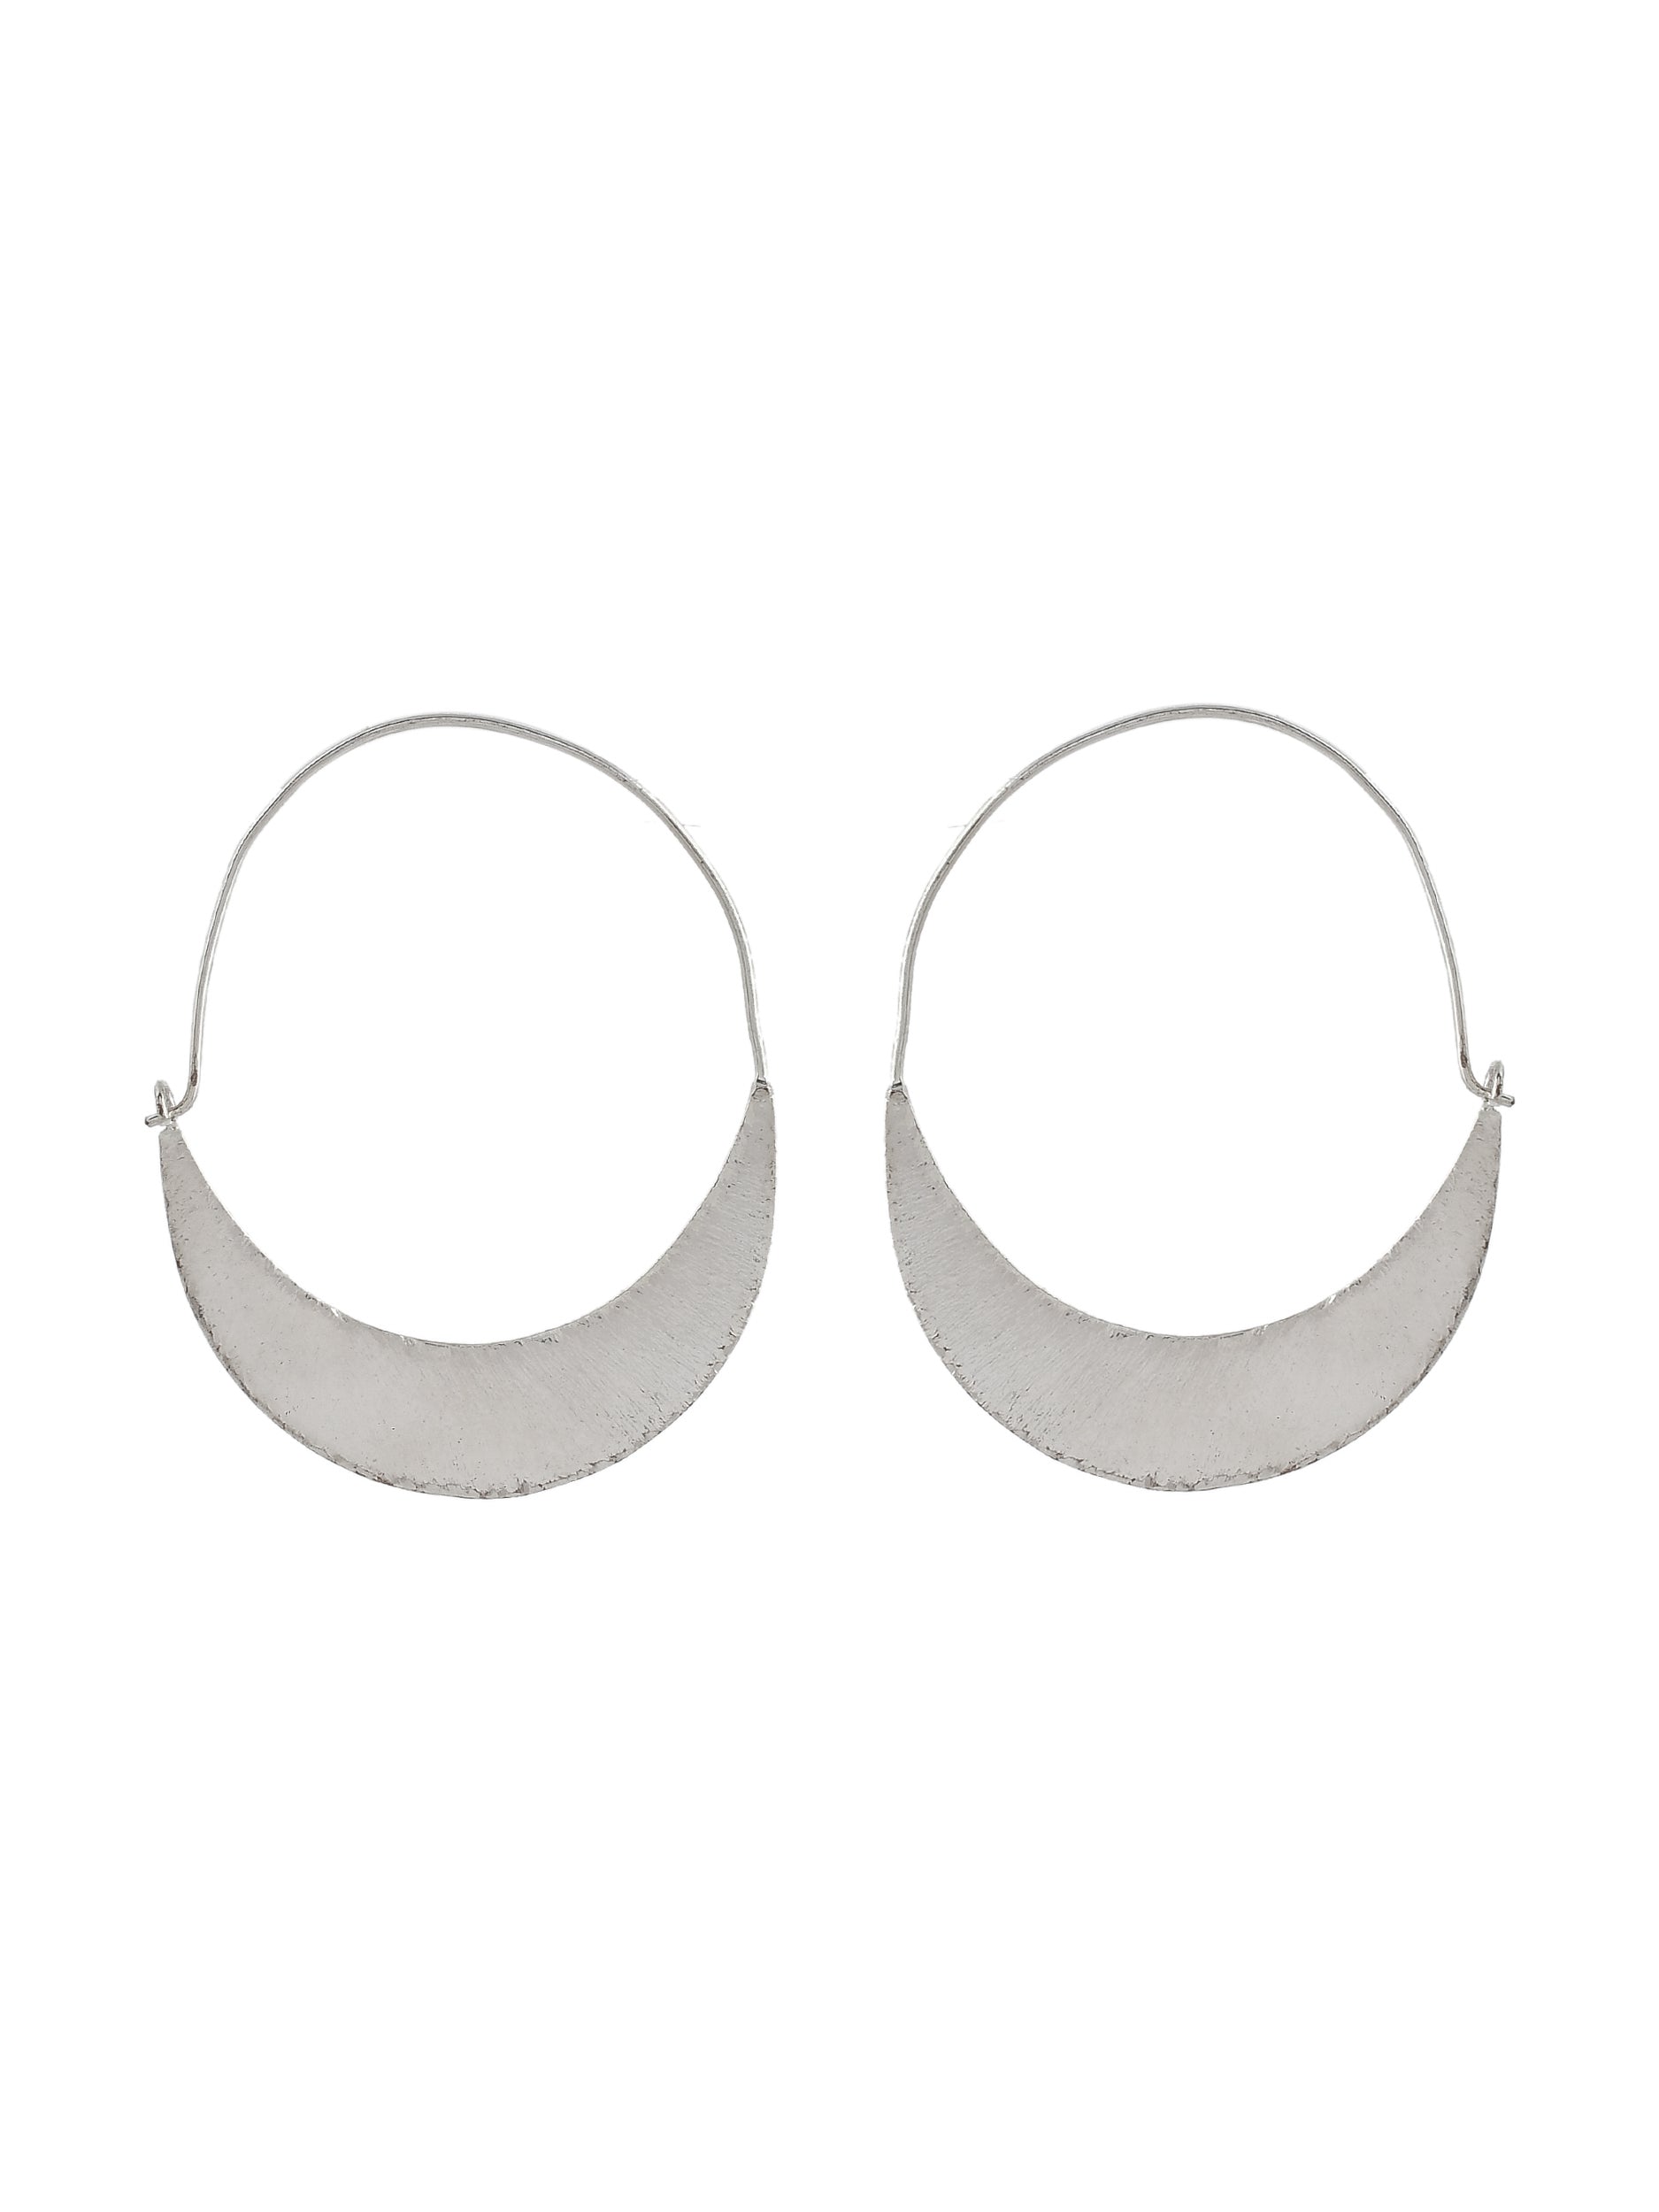 Silver Plated Circular Hoop Earrings